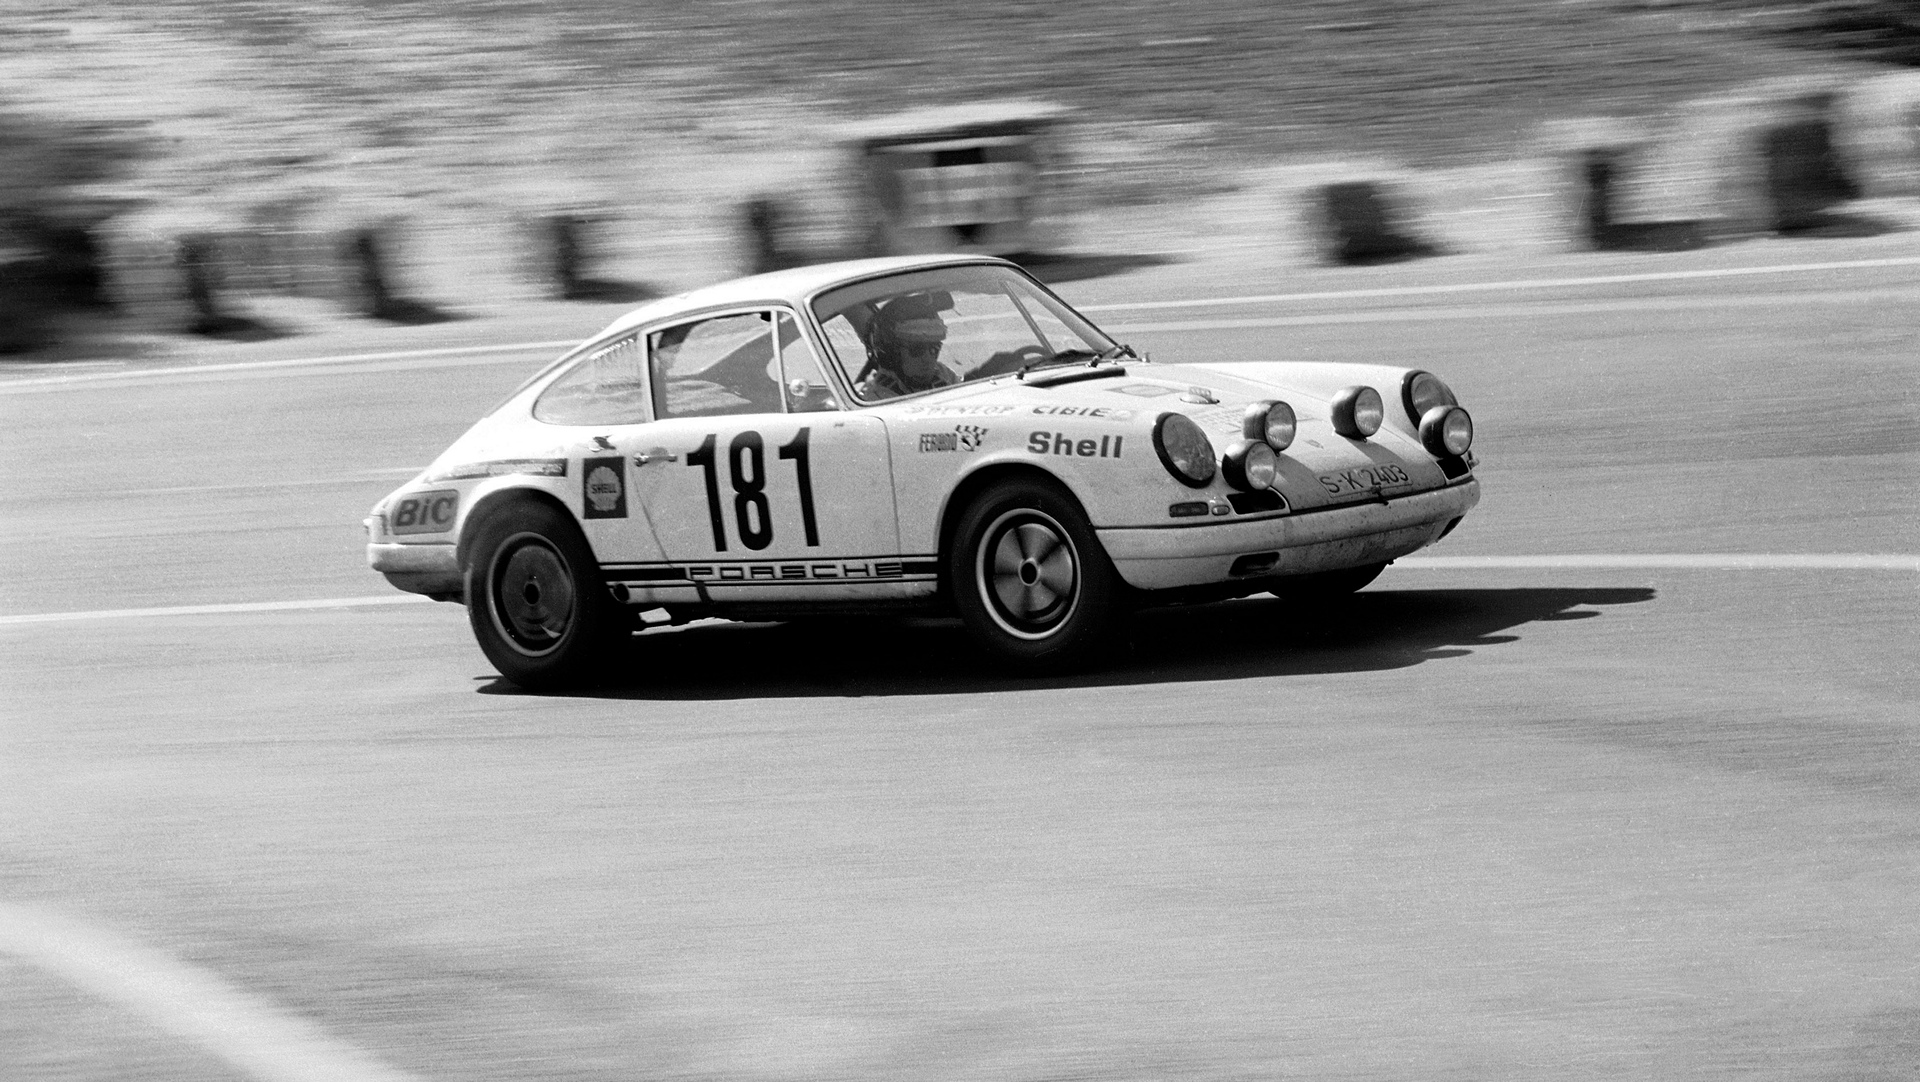 911 R 2,0 Coupé, Gerard Larrousse at the 'Tour de France, 1969 © Dr. Ing. h.c. F. Porsche AG